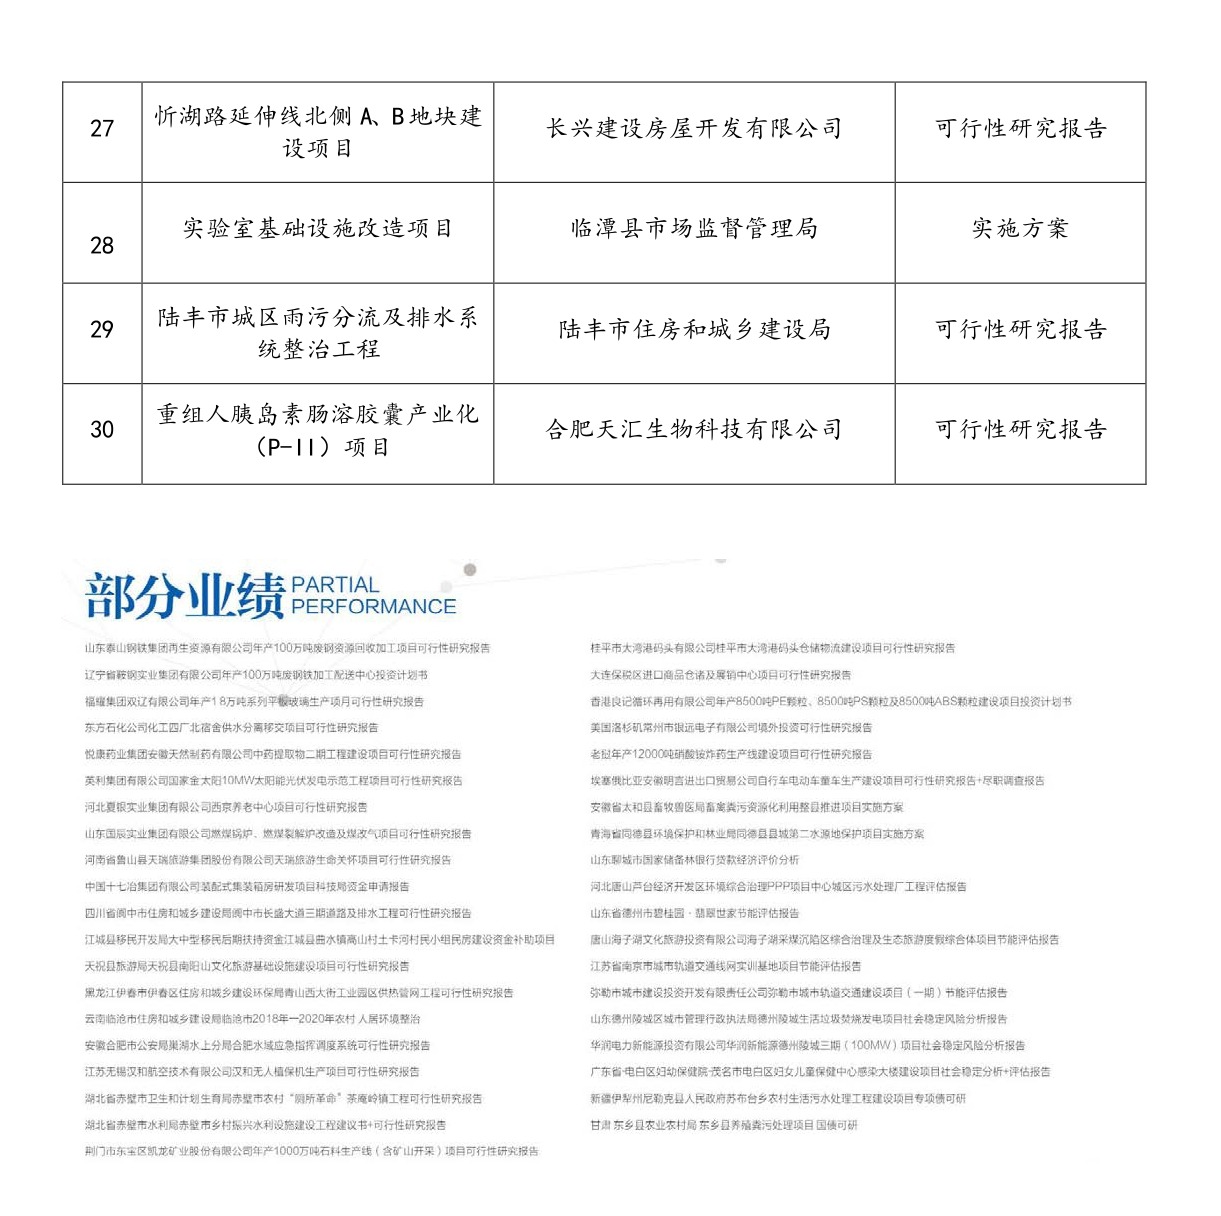 宣传册—安徽诚创工程咨询有限公司_page-0040.jpg